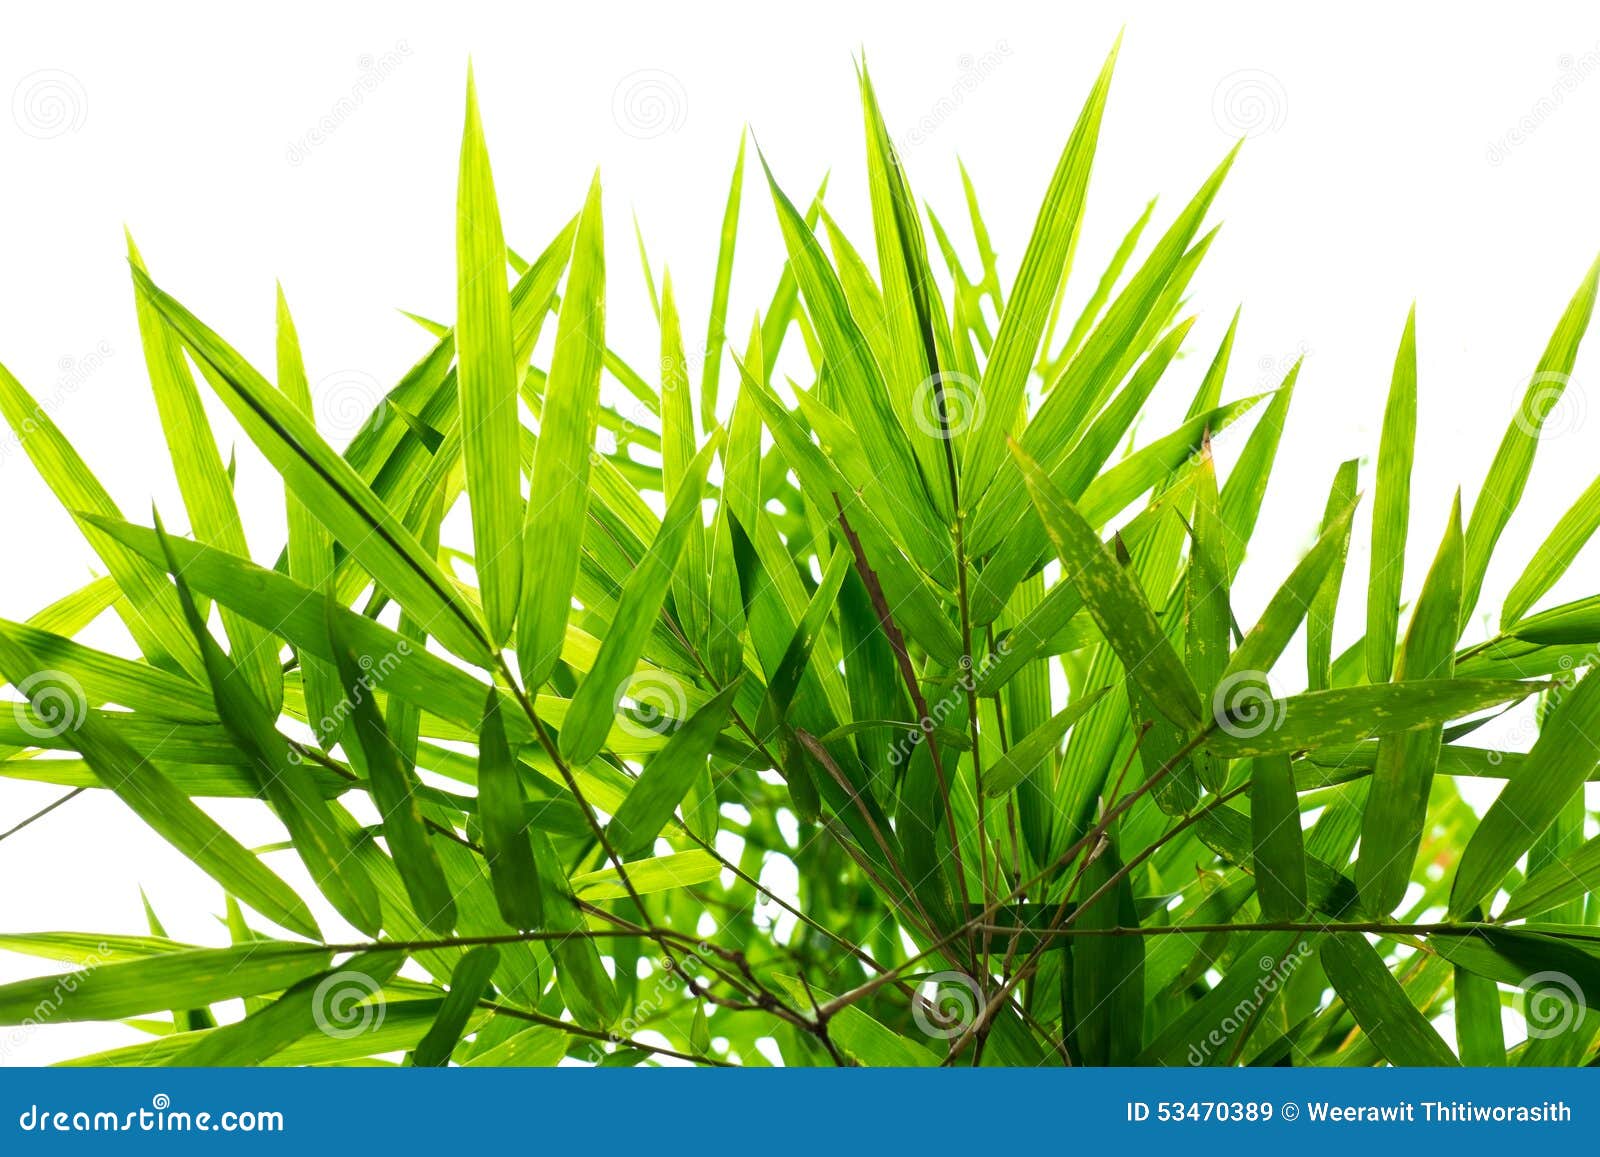 Bamboo leaf background stock image. Image of decor, design - 53470389